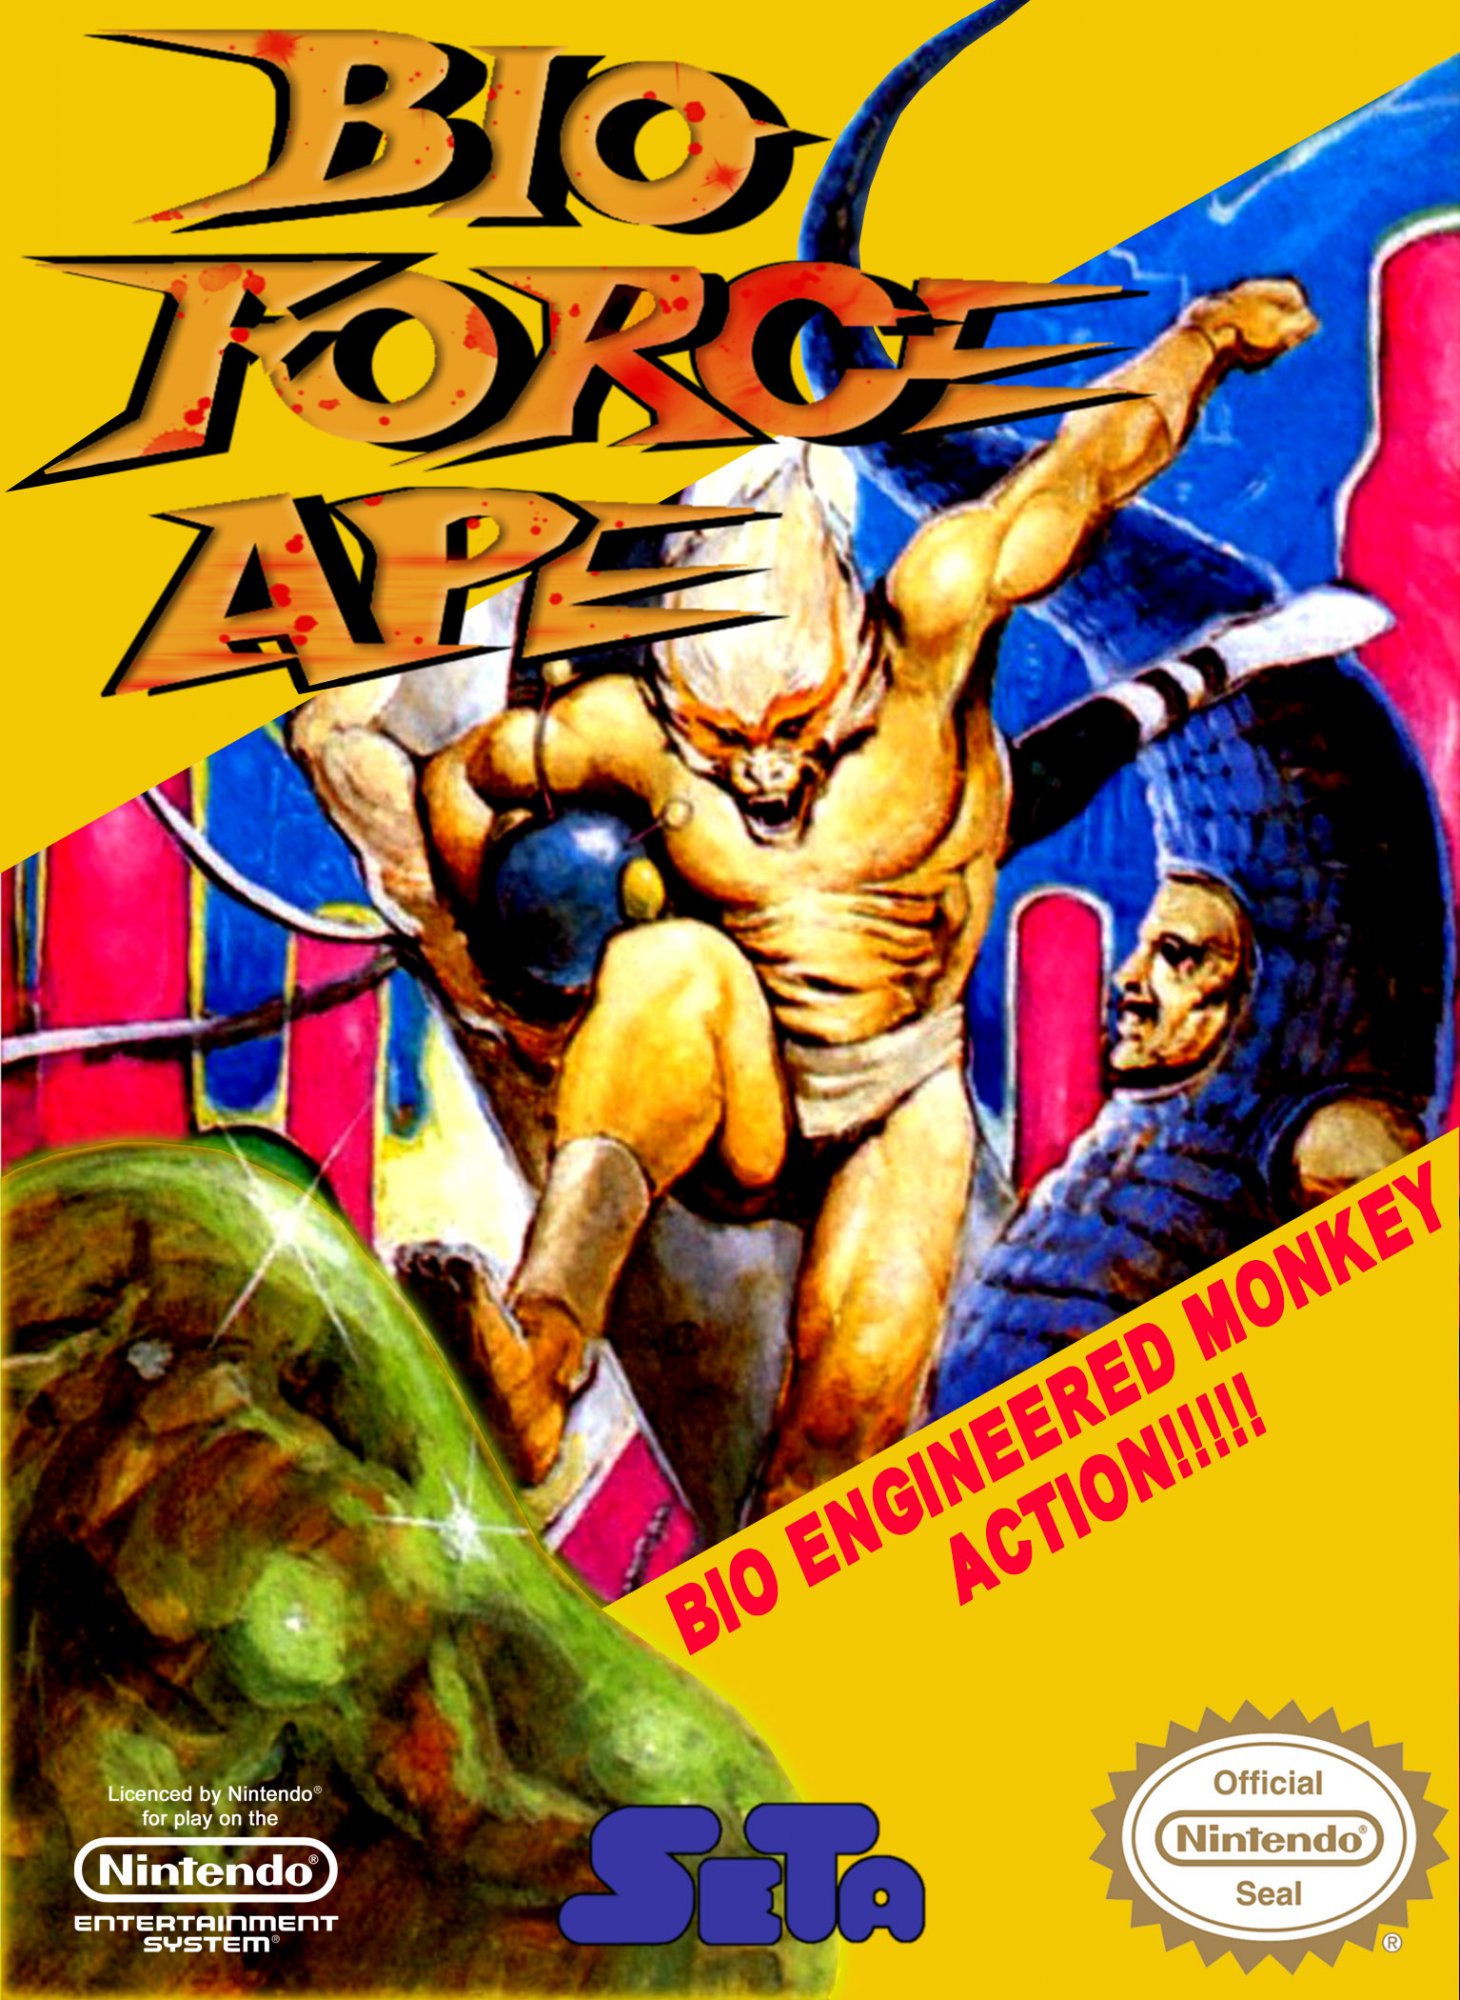 Bio Force Ape